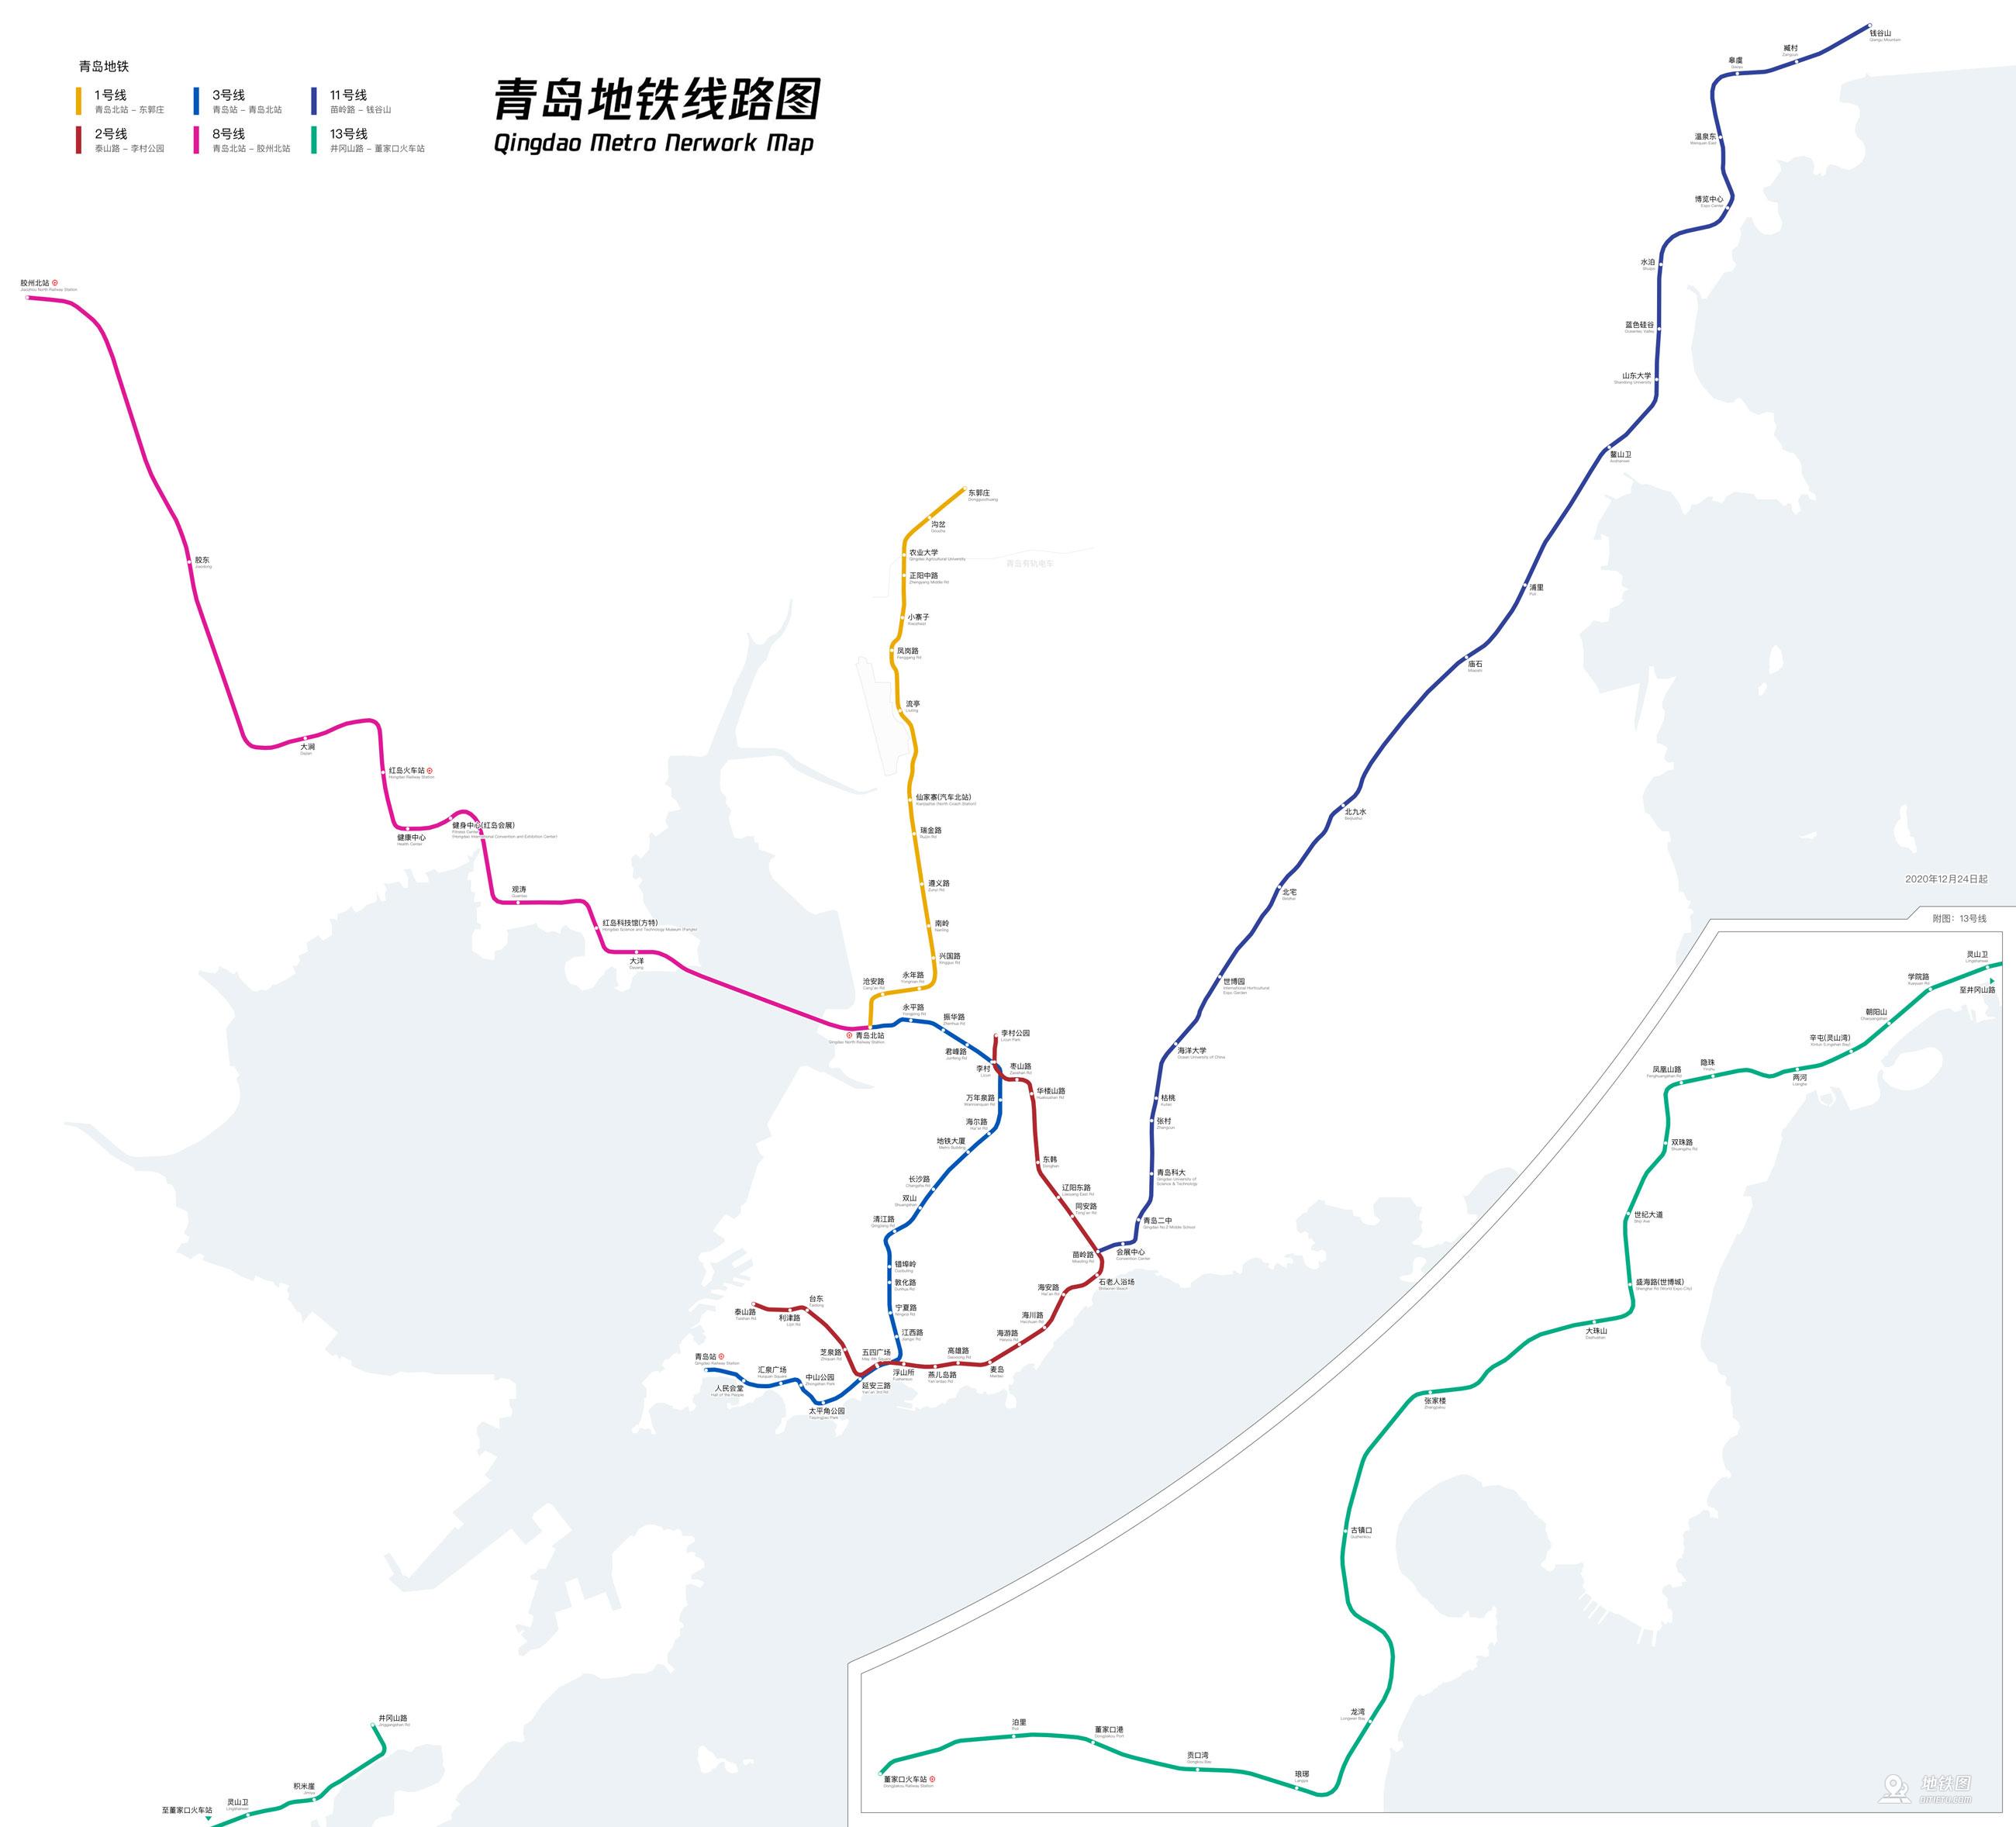 点击图片可查看下载大图※线网规划图终以青岛地铁建设实际情况为准